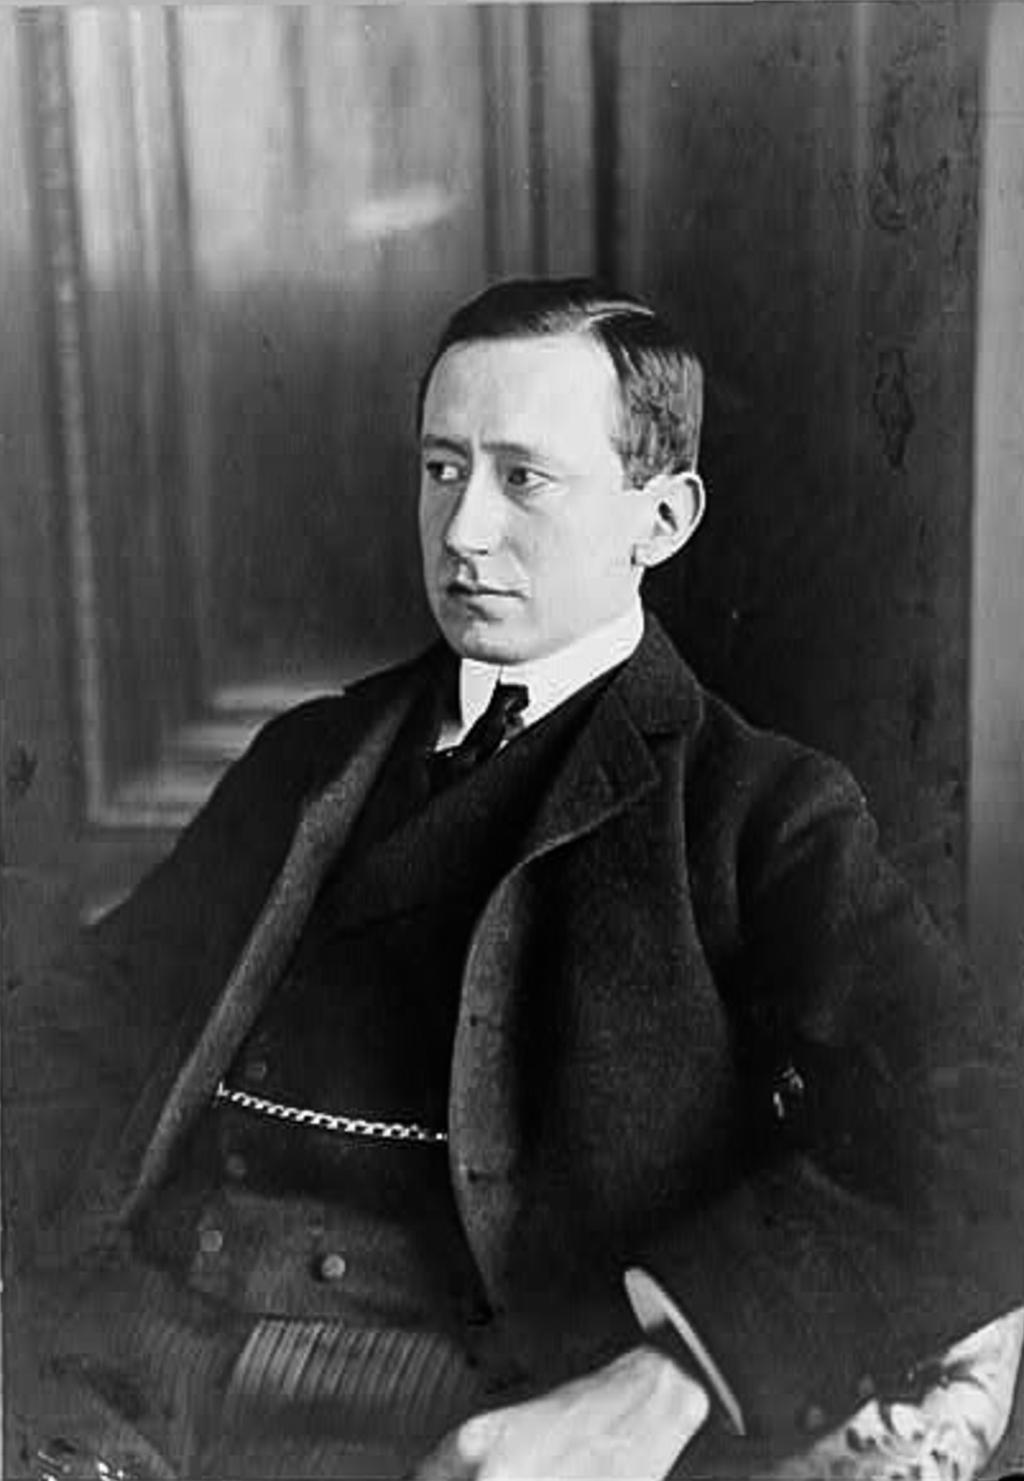 Guglielmo Marconi in 1903